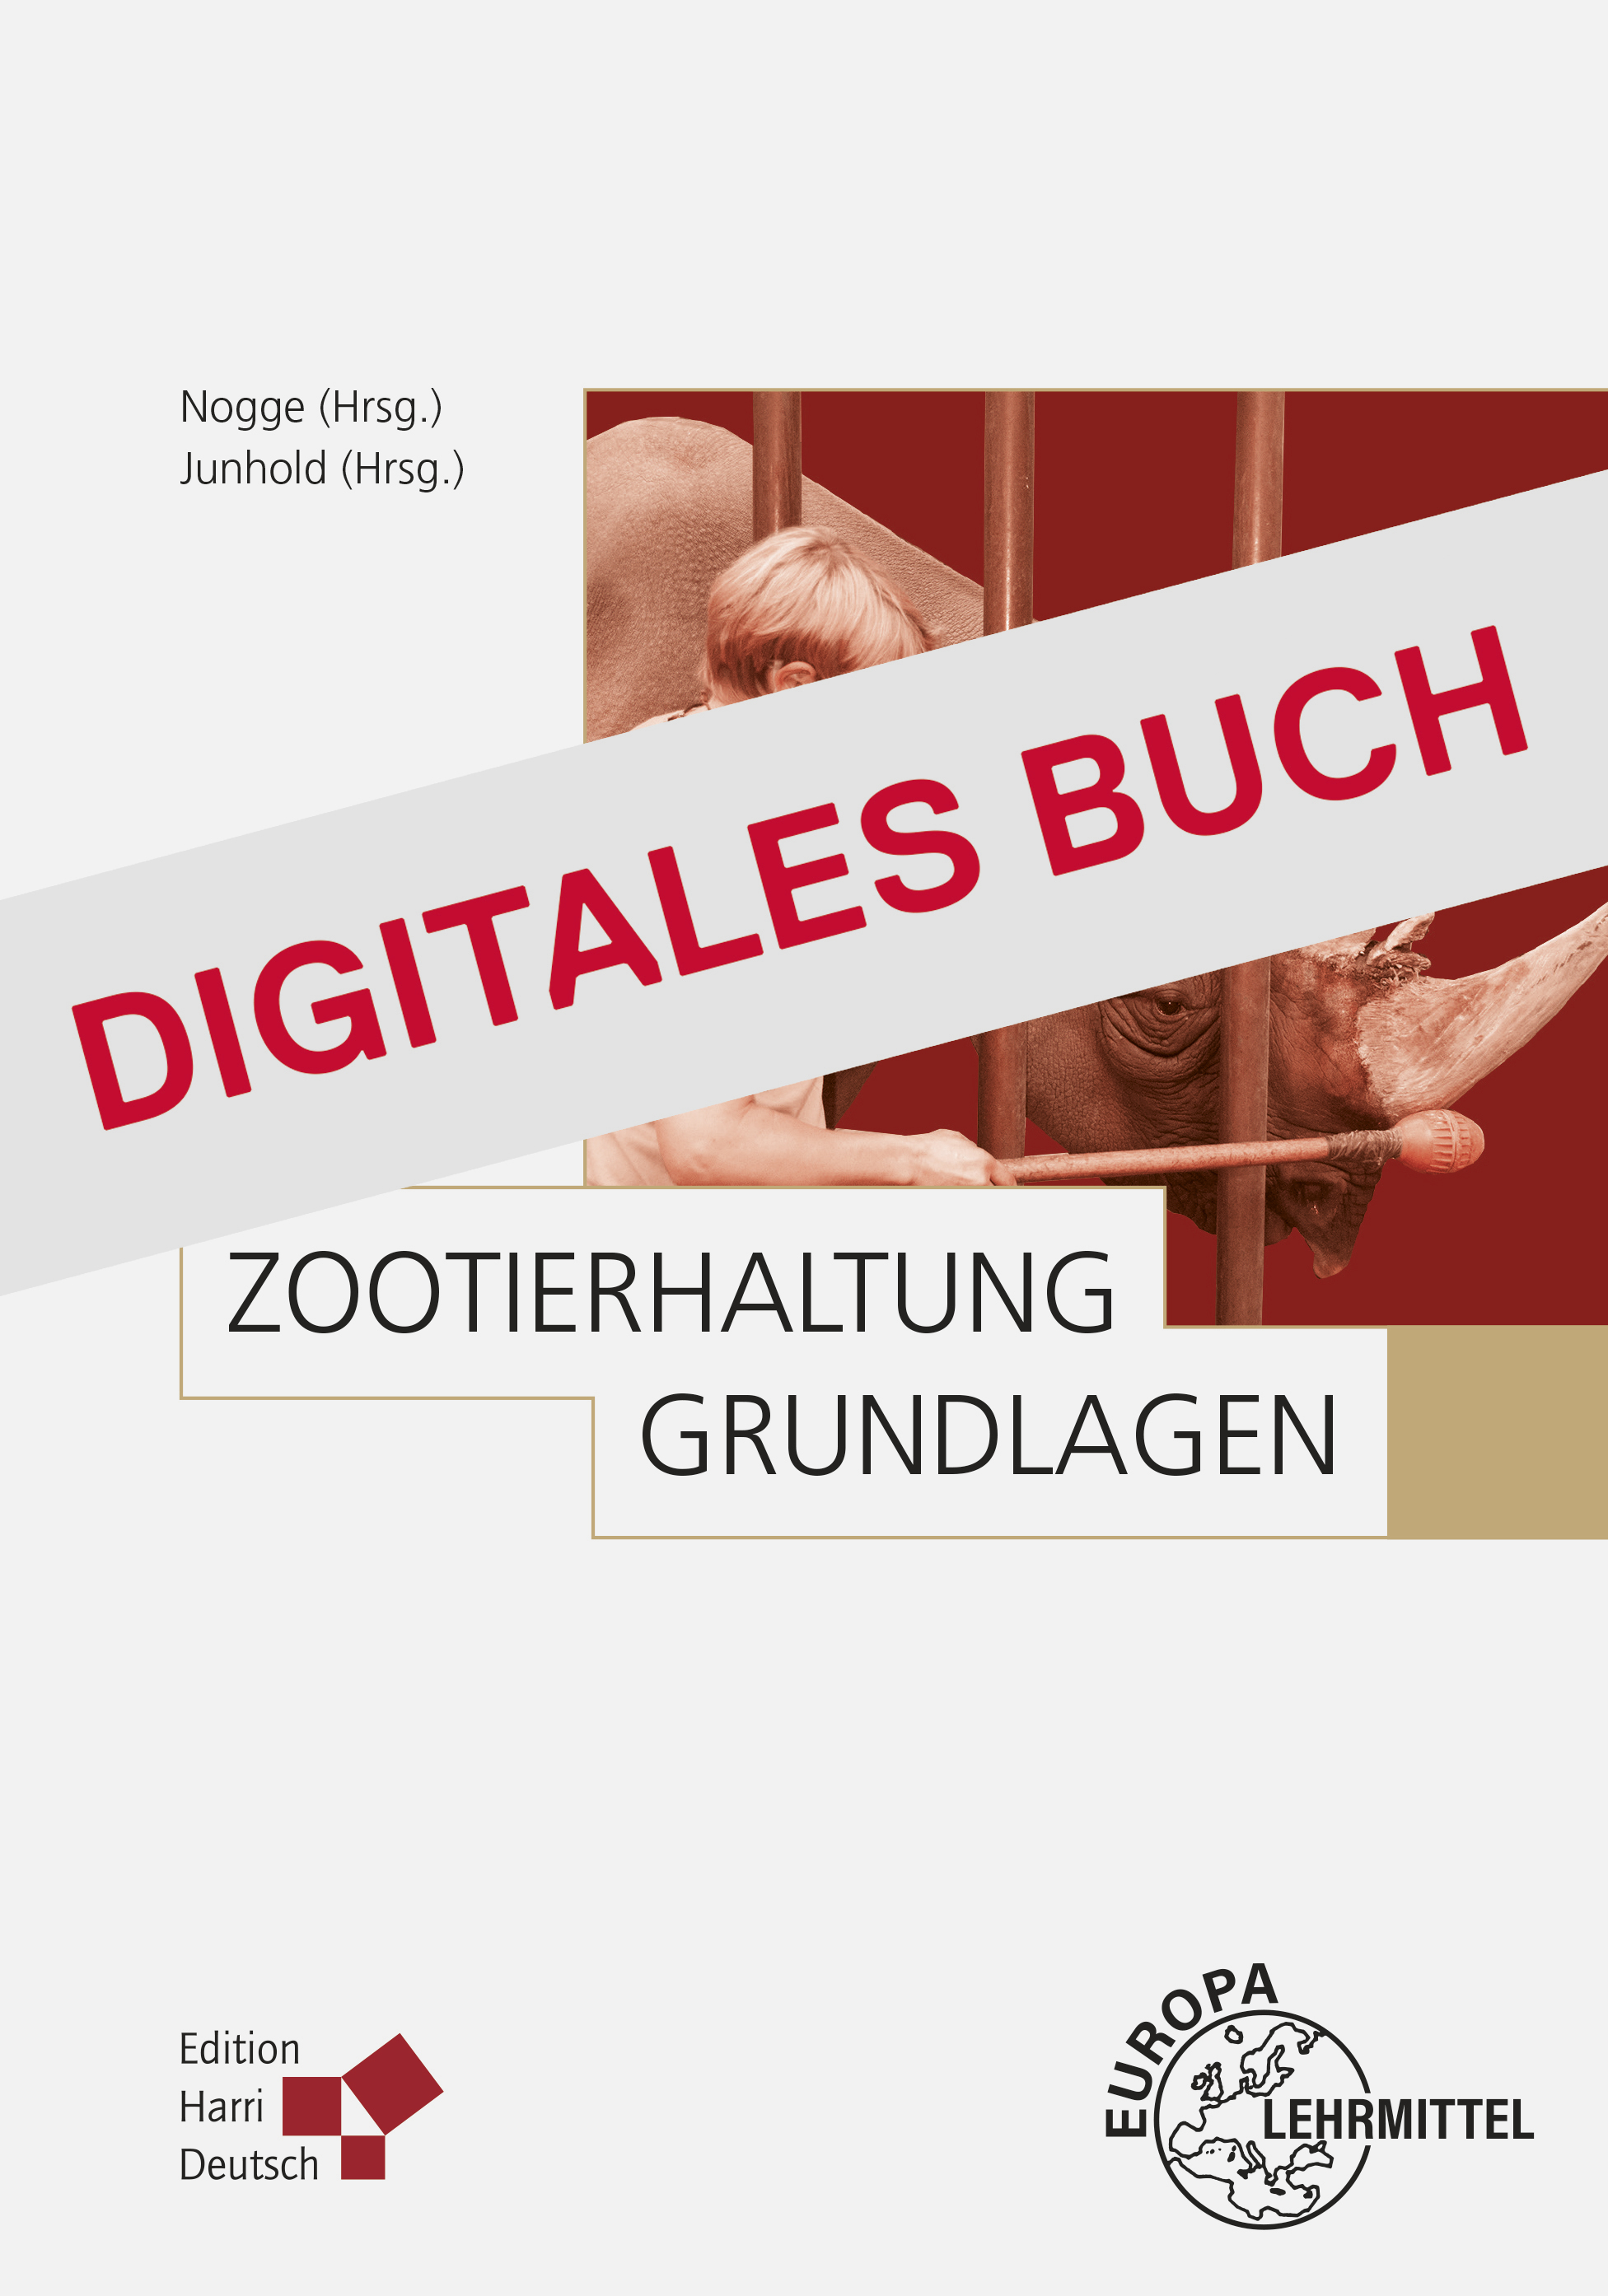 Zootierhaltung: Grundlagen - Digitales Buch